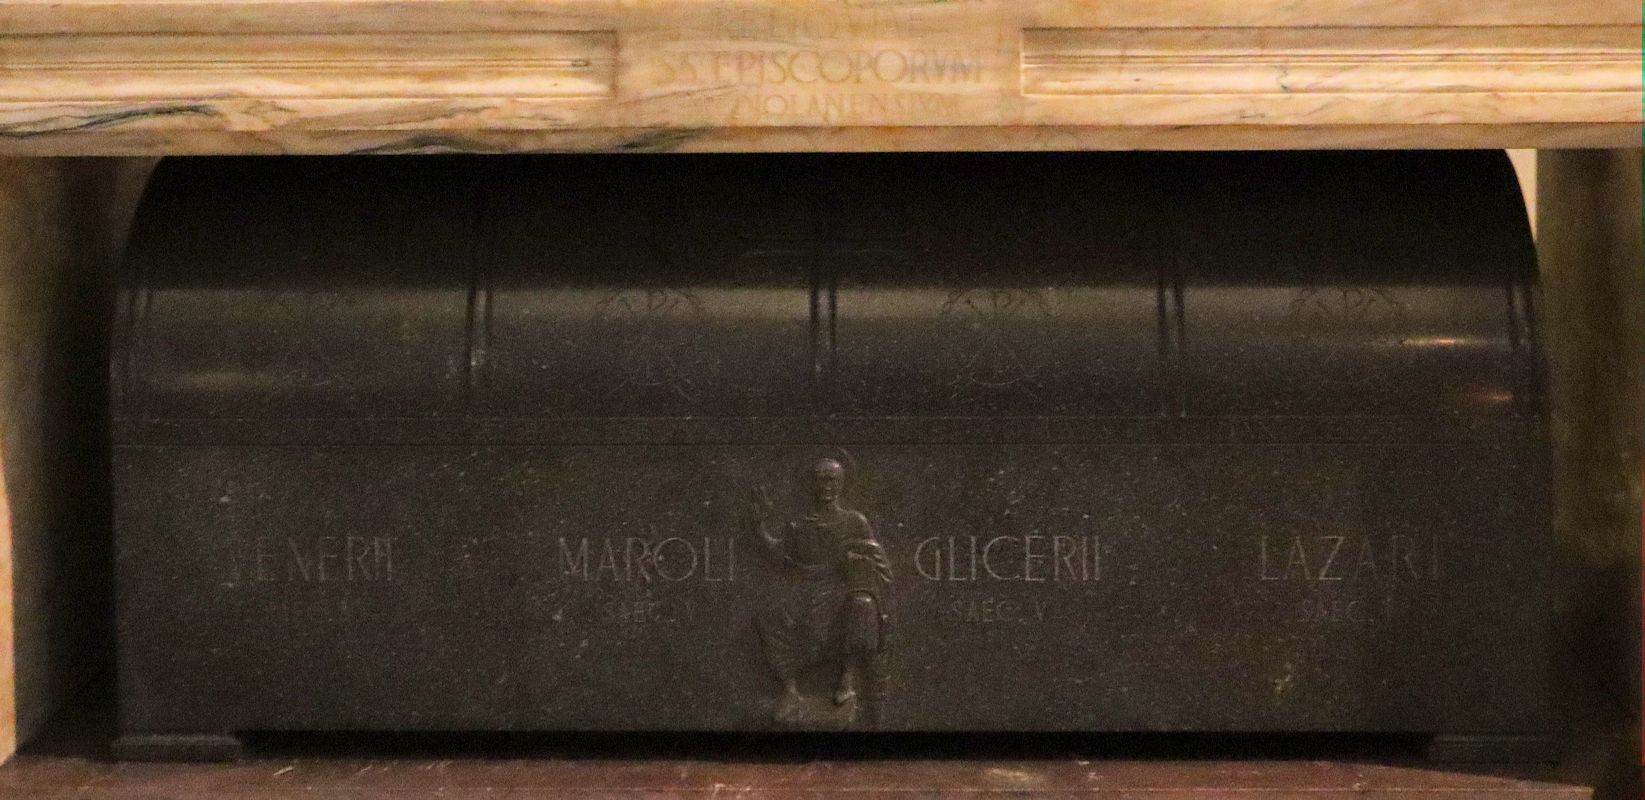 Sarkophag für Clicerius und die Bischöfe Venerius, Marolus und Lazarus in der Kirche San Nazaro in Brolo in Mailand